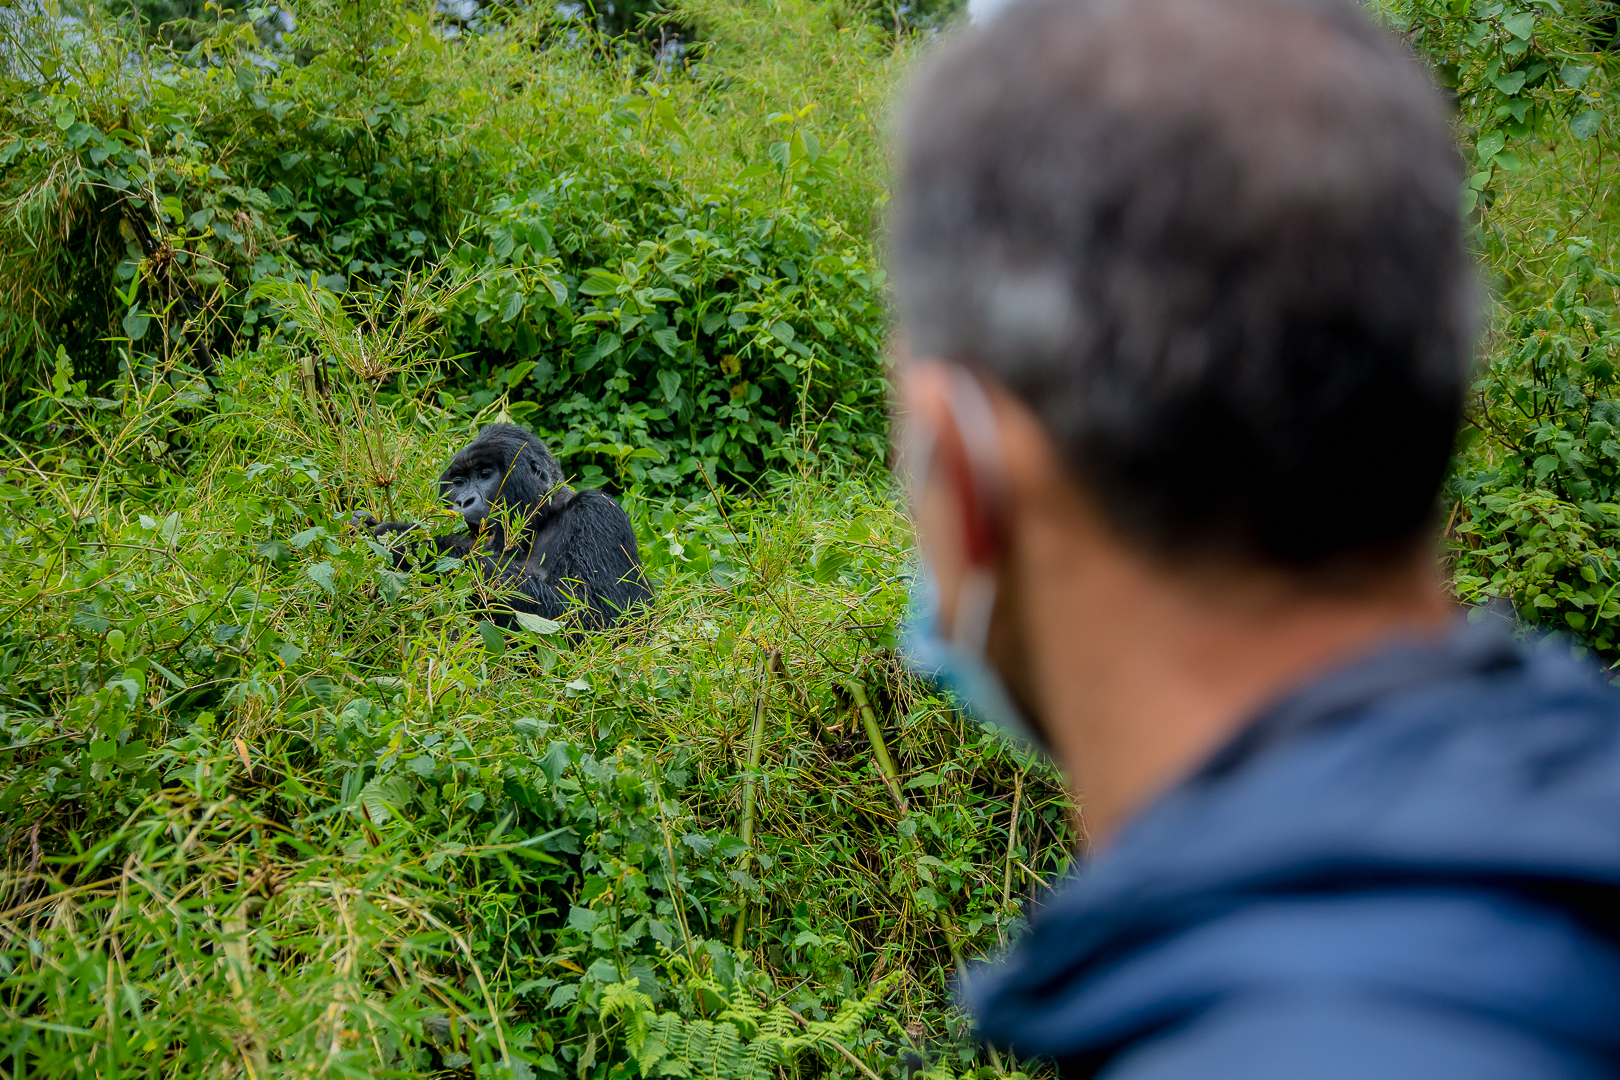 gorilla trekking experience in Volcanoes National Park